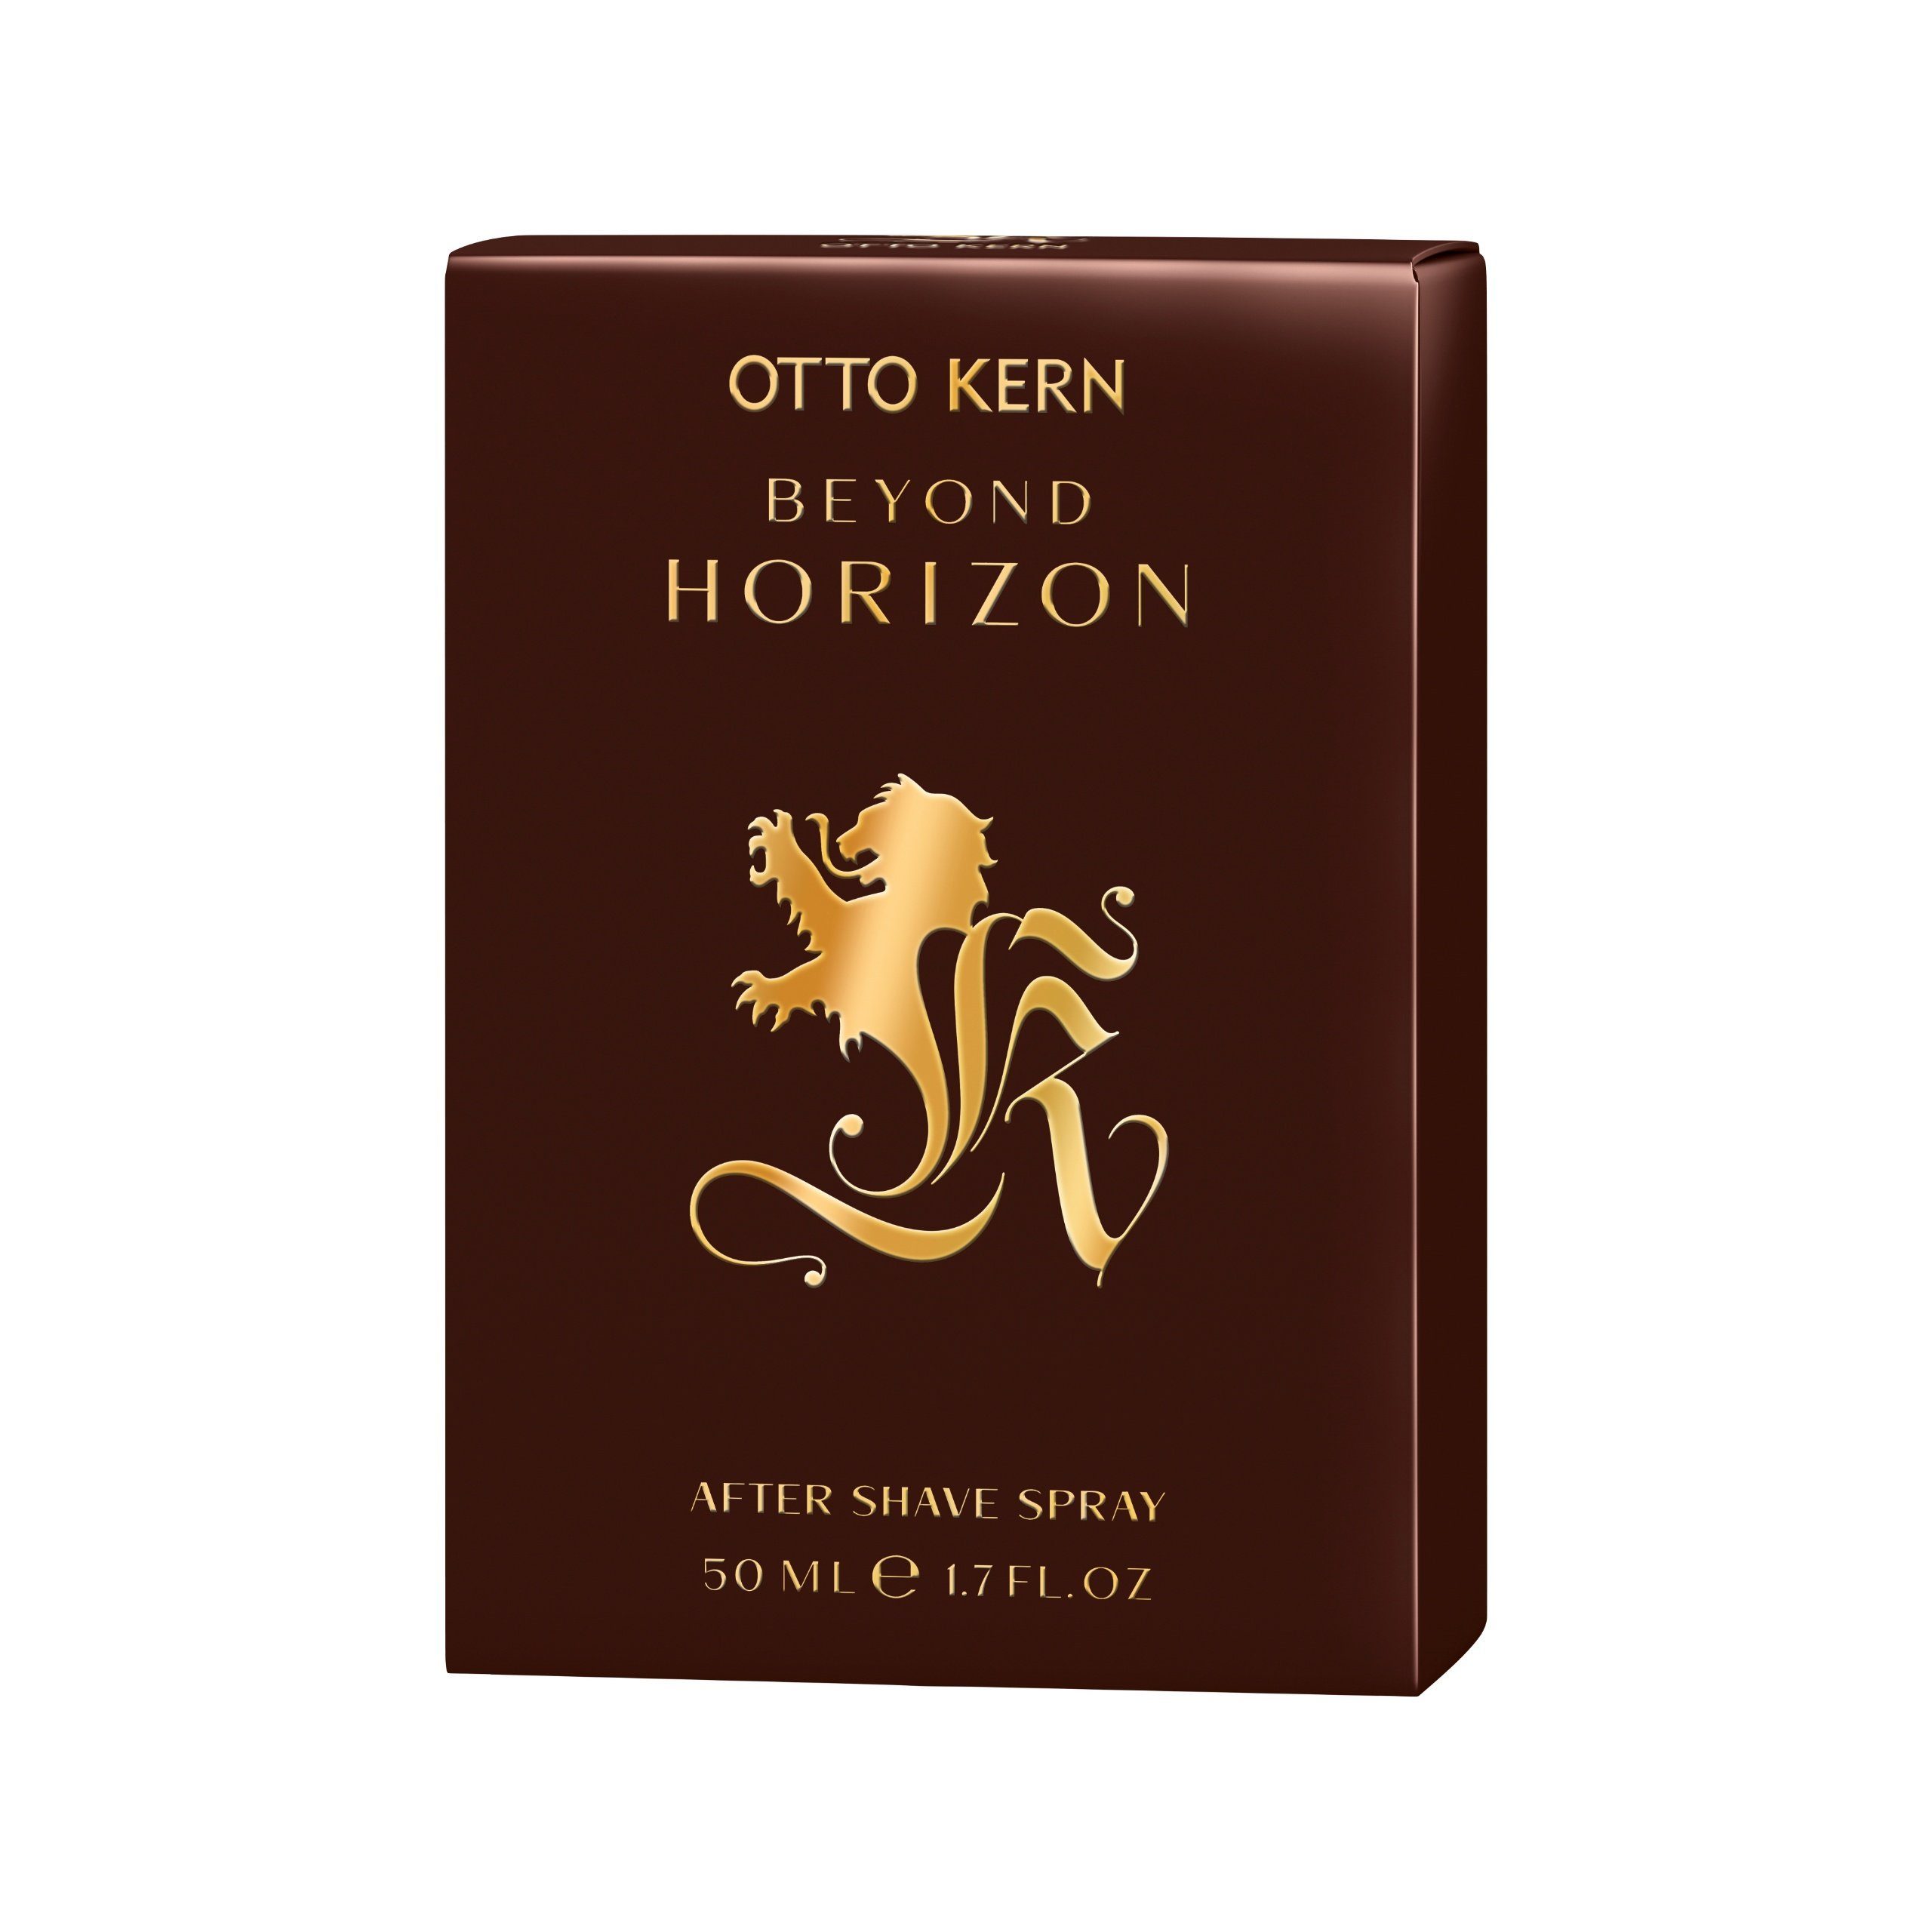 Otto Kern Horizon Beyond Gesichts-Reinigungslotion 50 Shave ml Kern Kern Spray After